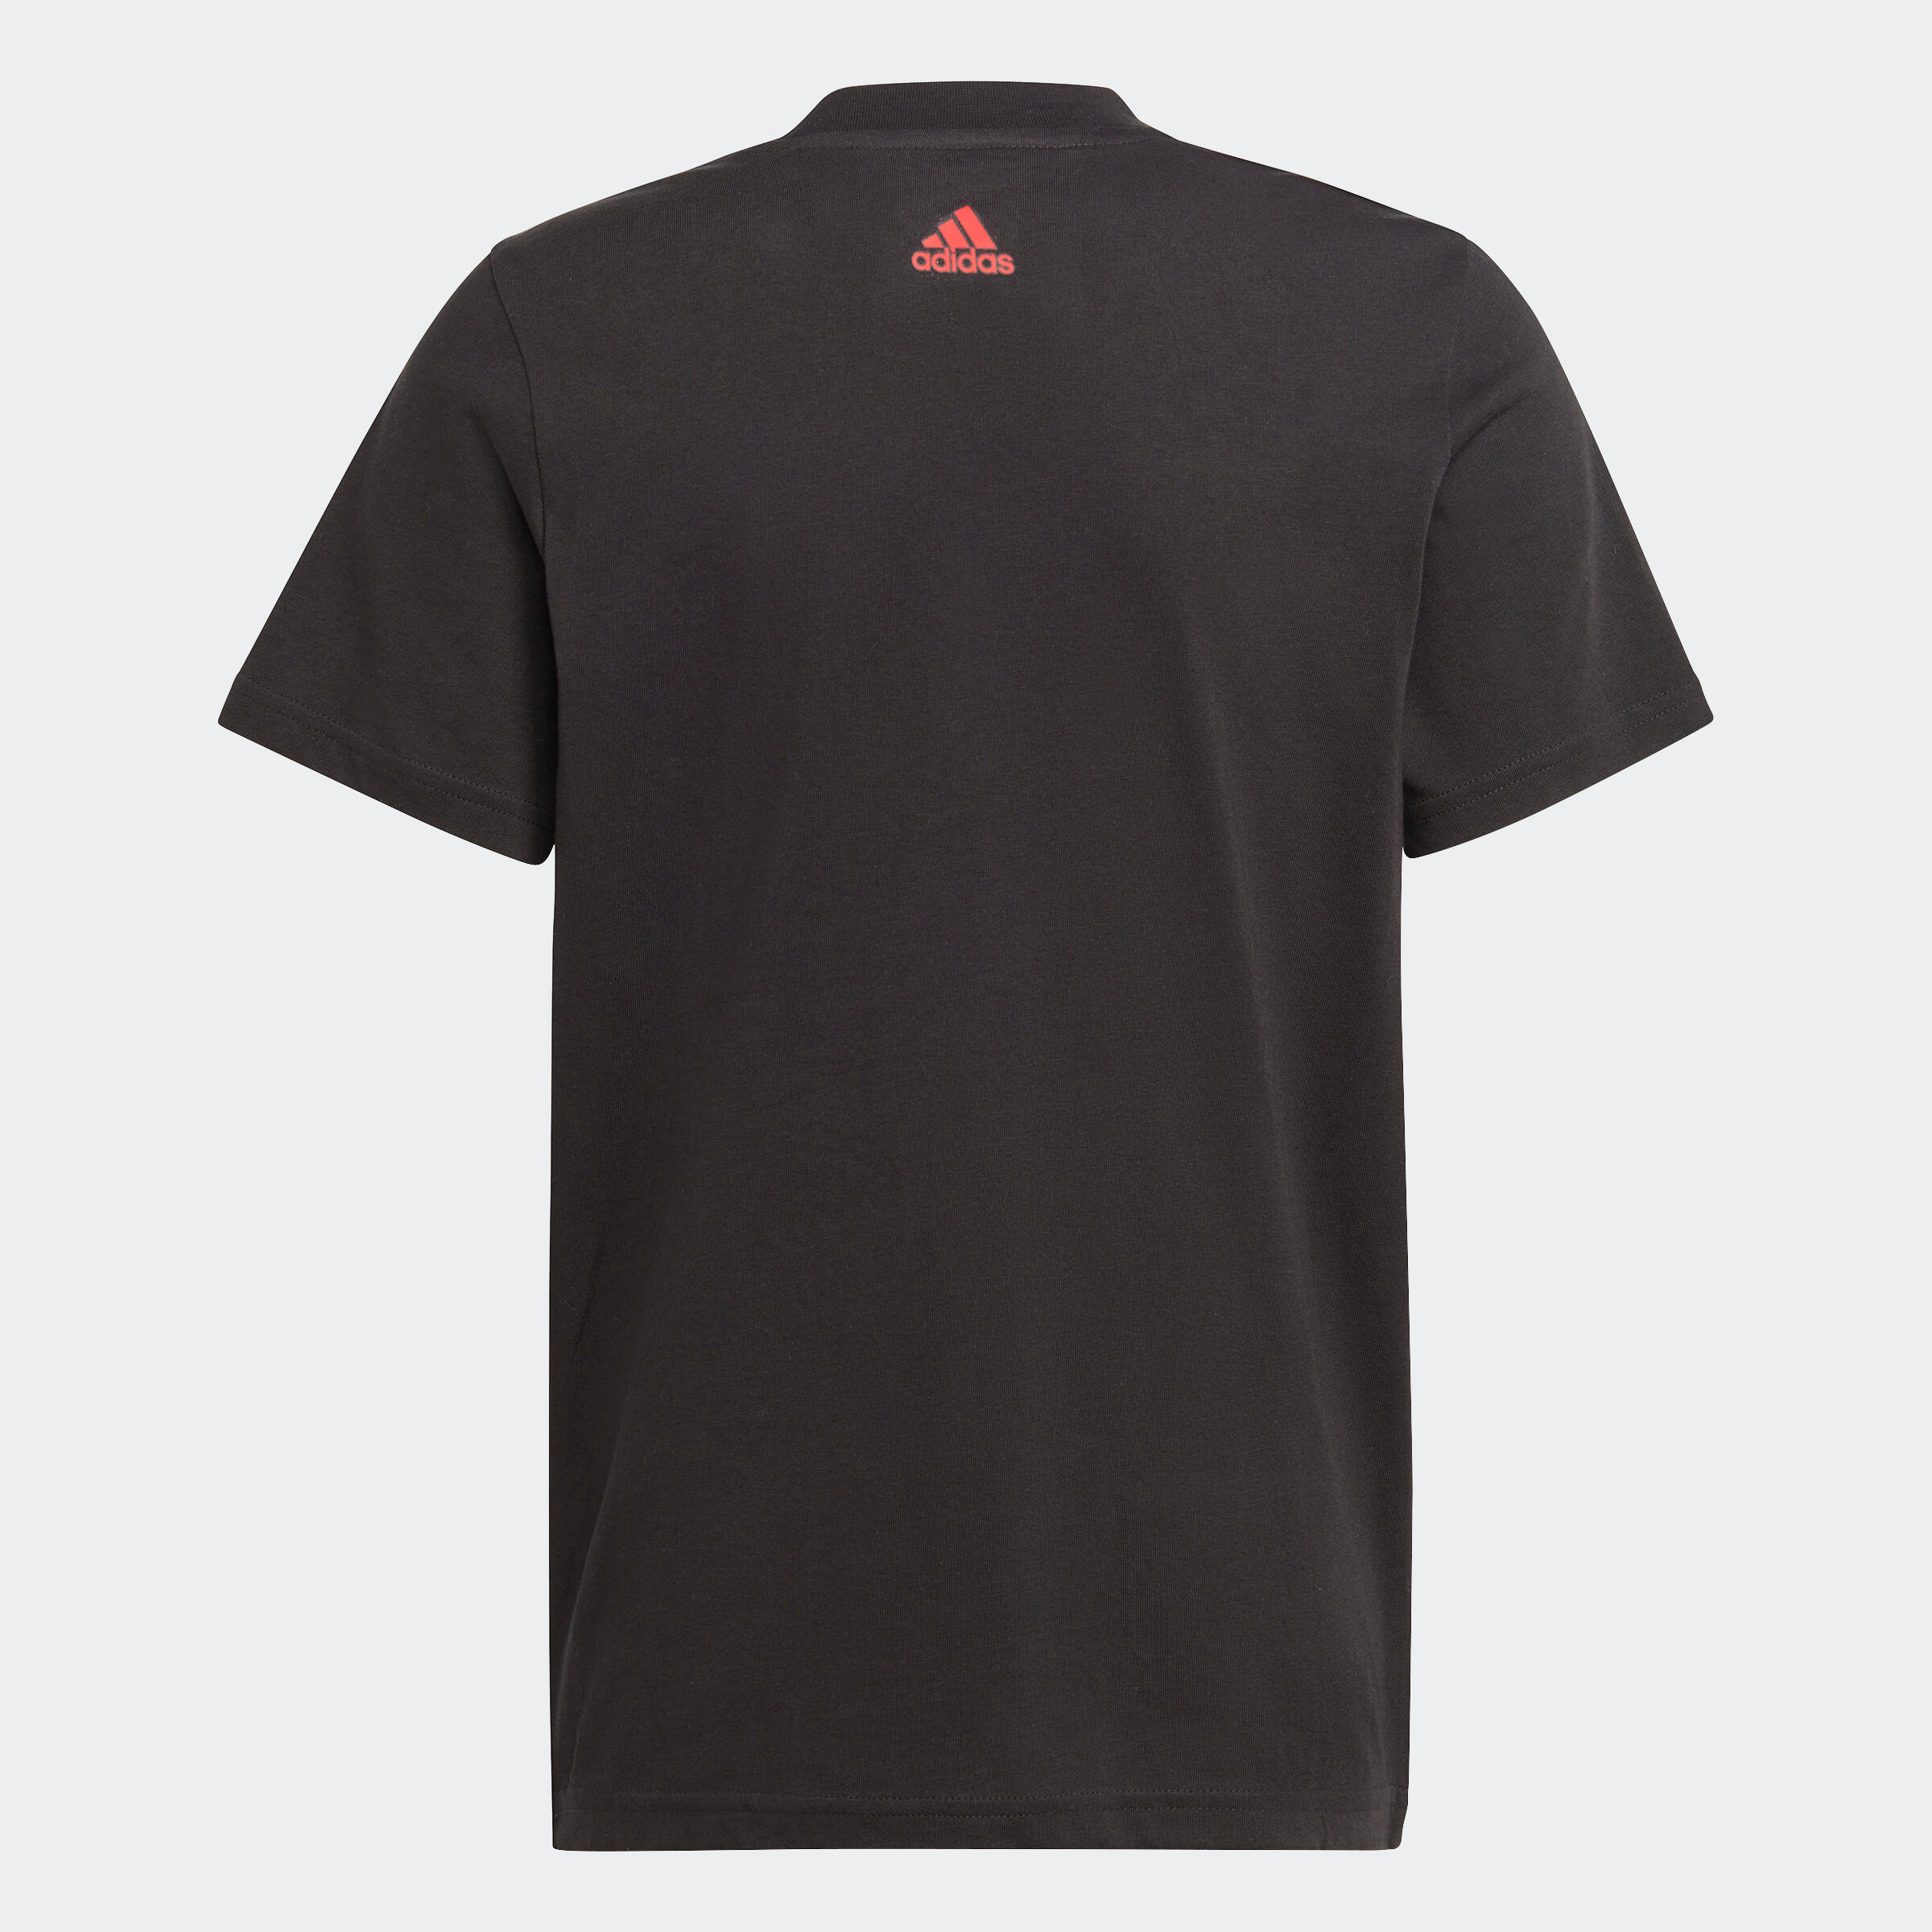 Kids' T-Shirt - Black/Red Logo 2/5